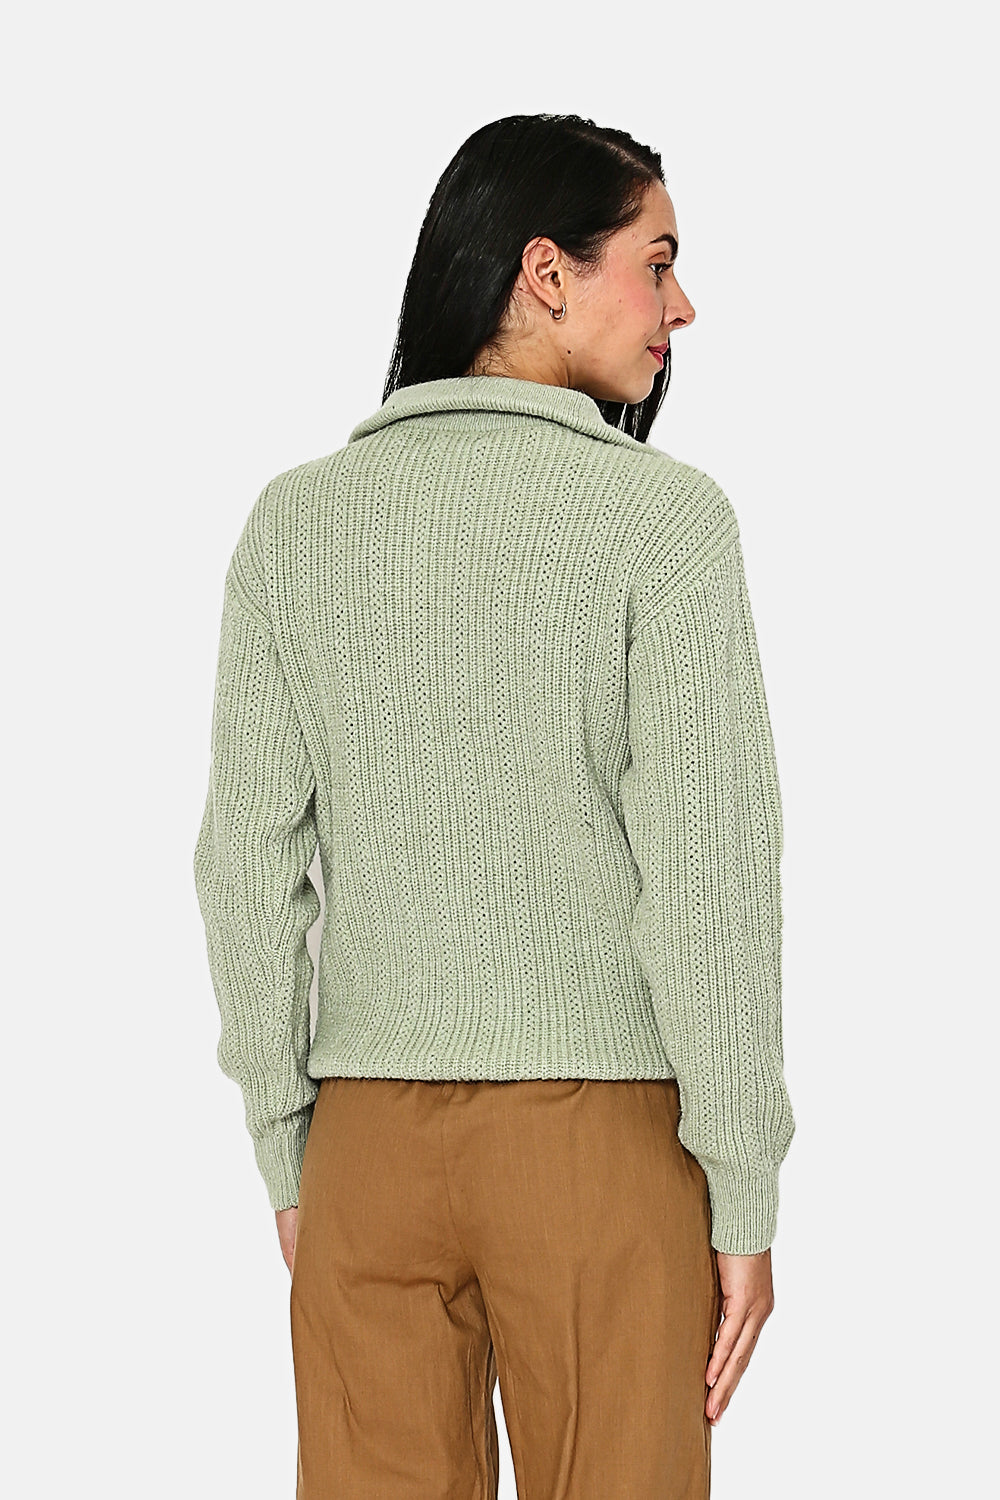 Hochgeschlossener Pullover mit Reißverschluss, ausgefallener Strick